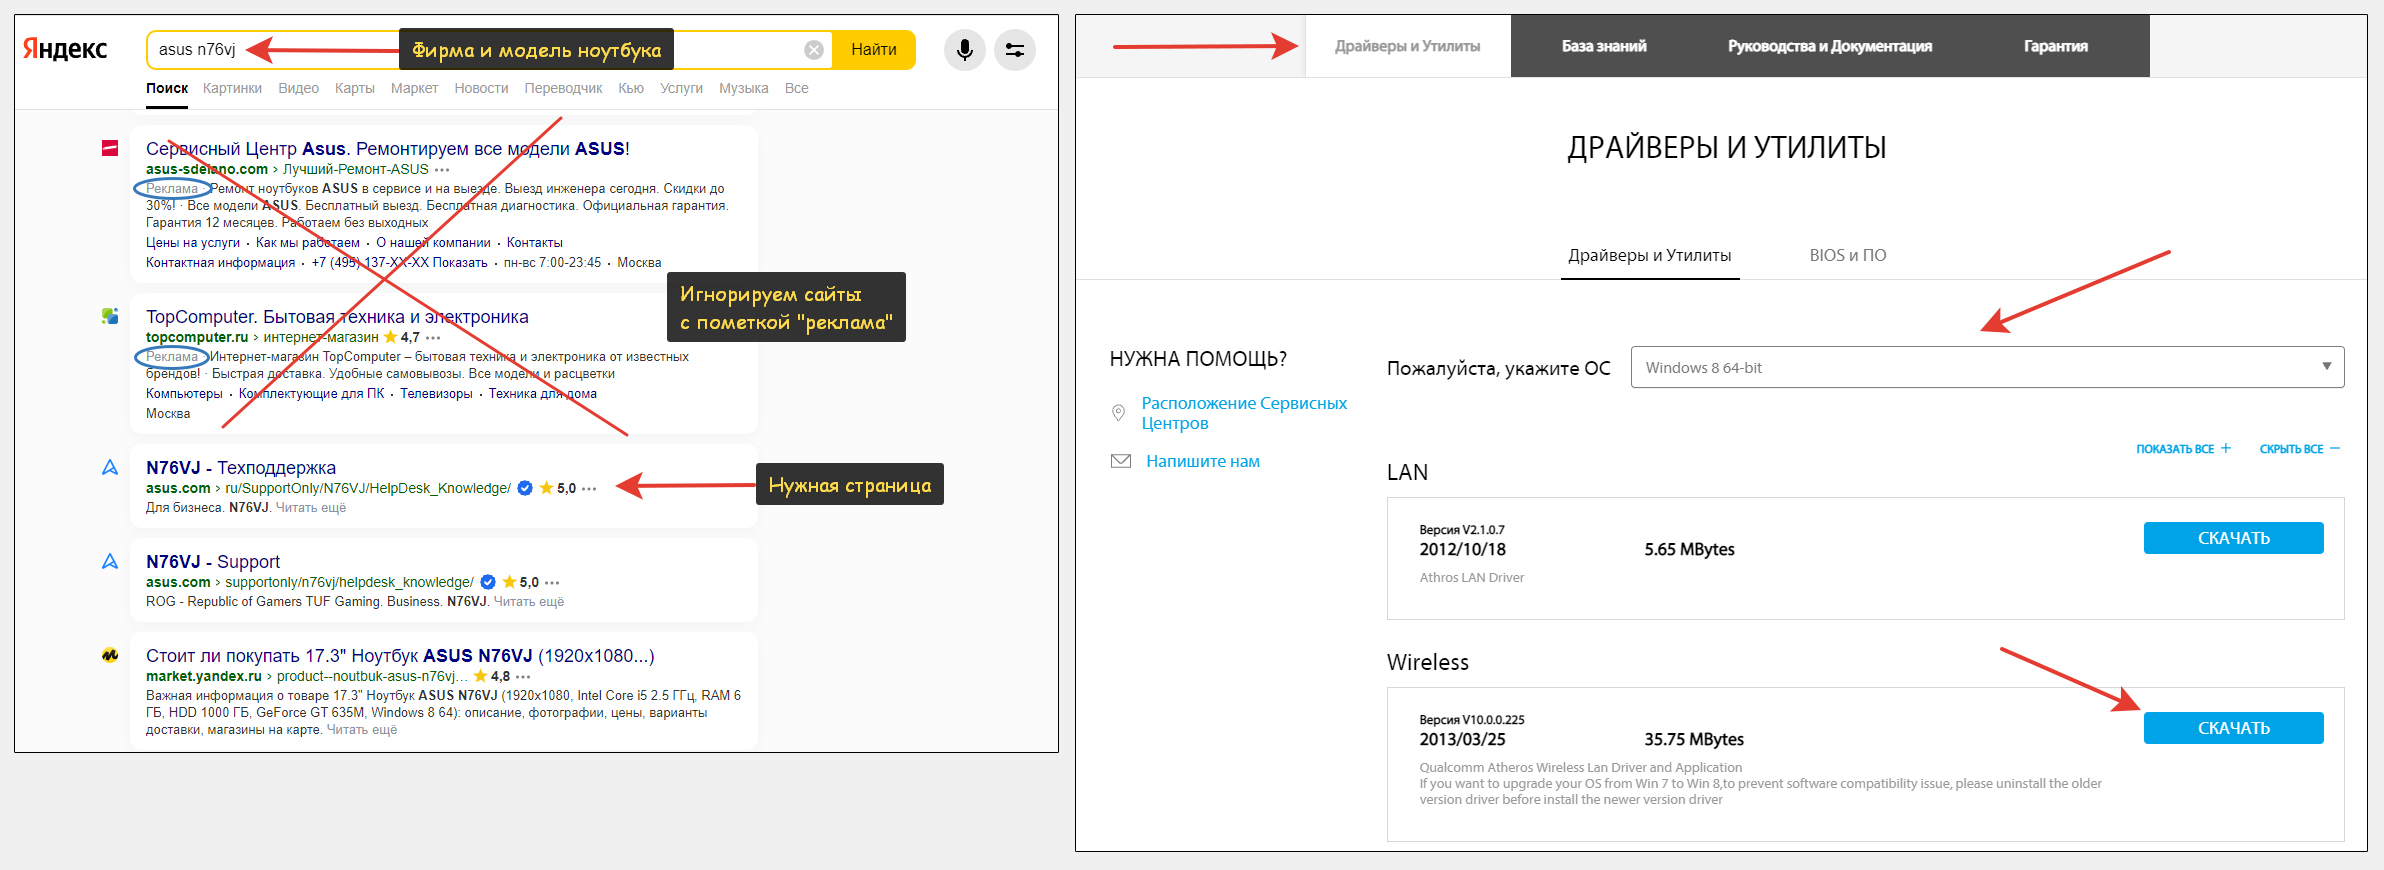 2 окна. В первом фирма и модель ноутбука введены в поисковый запрос Яндекса. Зачеркнуты рекламные блоки. Комментарий напротив официального сайта Asus. Во втором - процесс загрузки драйверов Wi-Fi адаптера с сайта производителя.